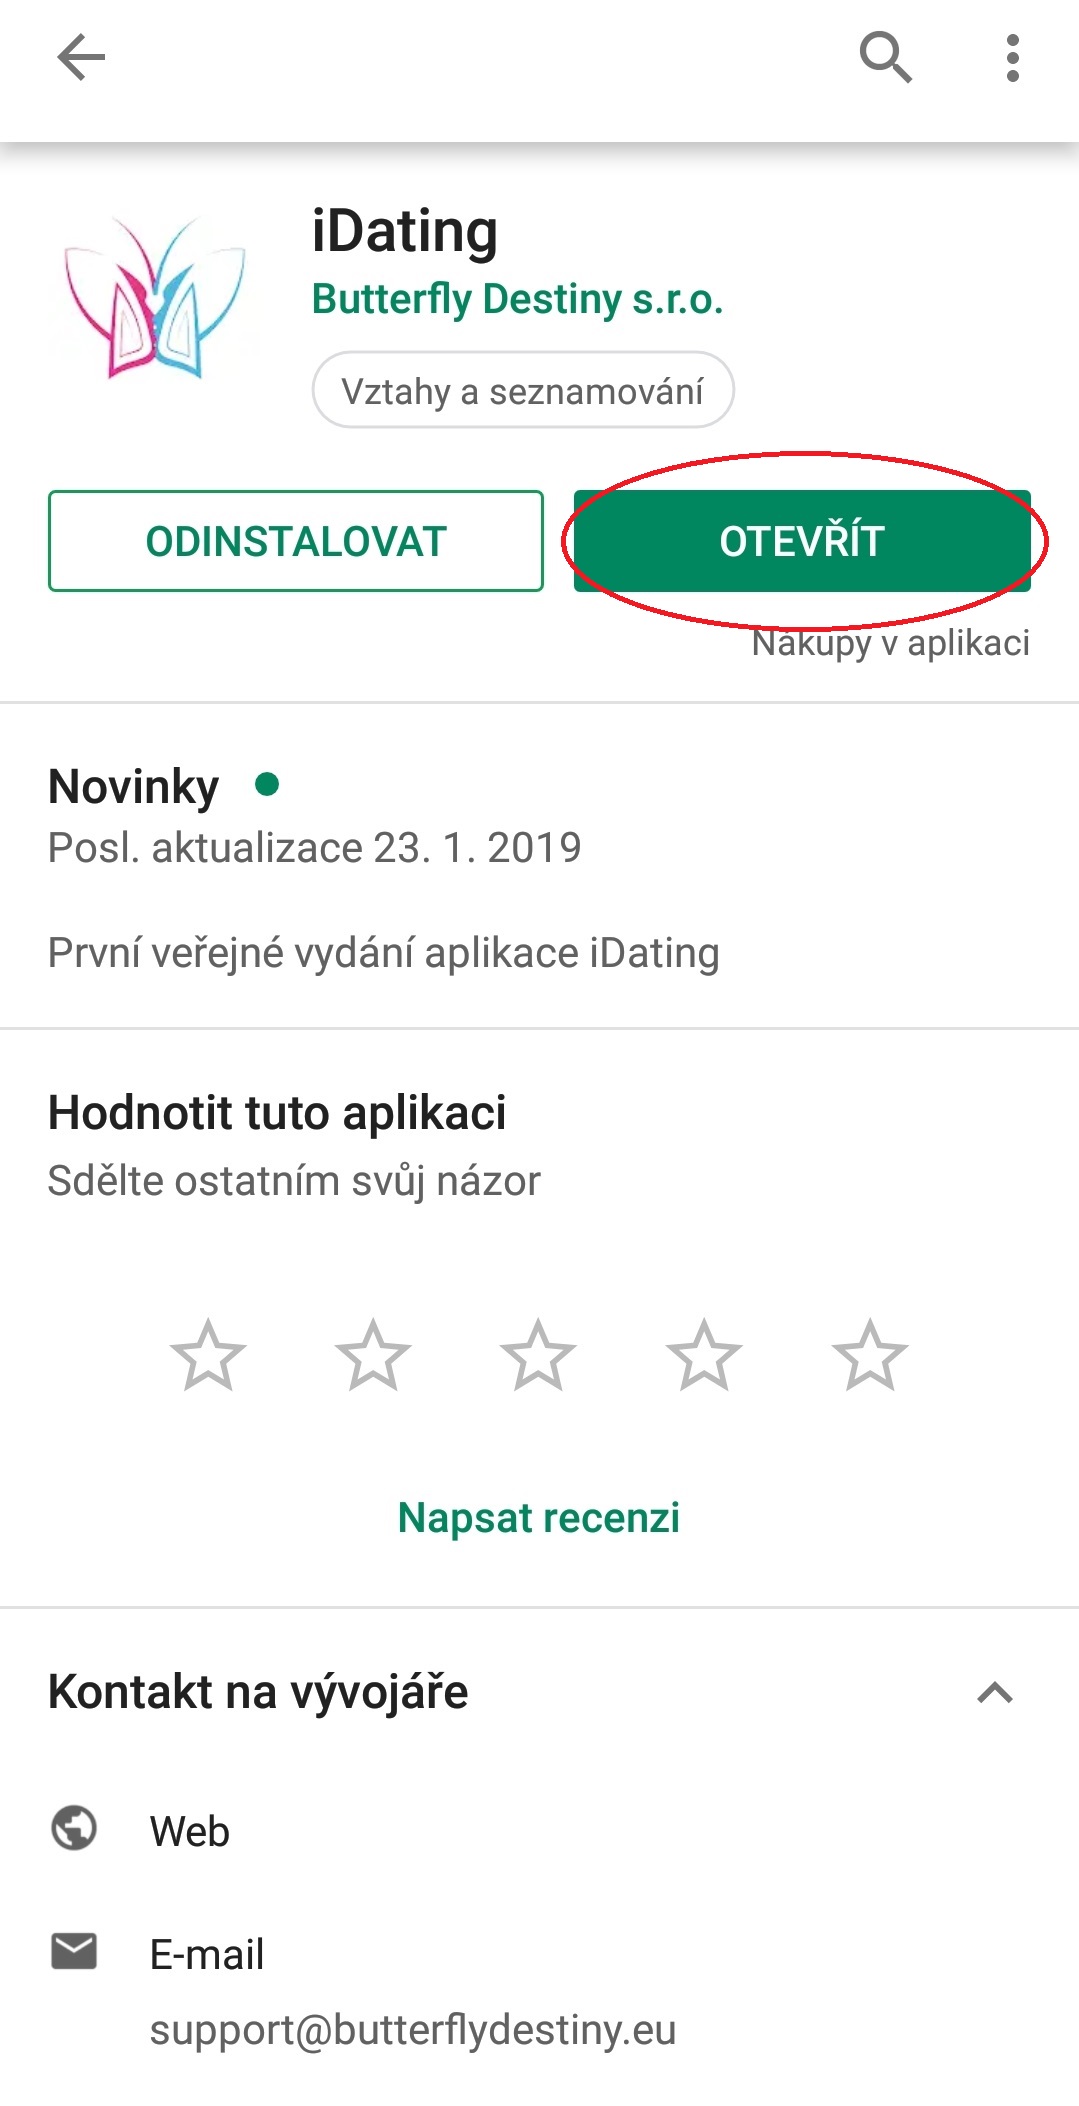 Zdarma online datování slovensko